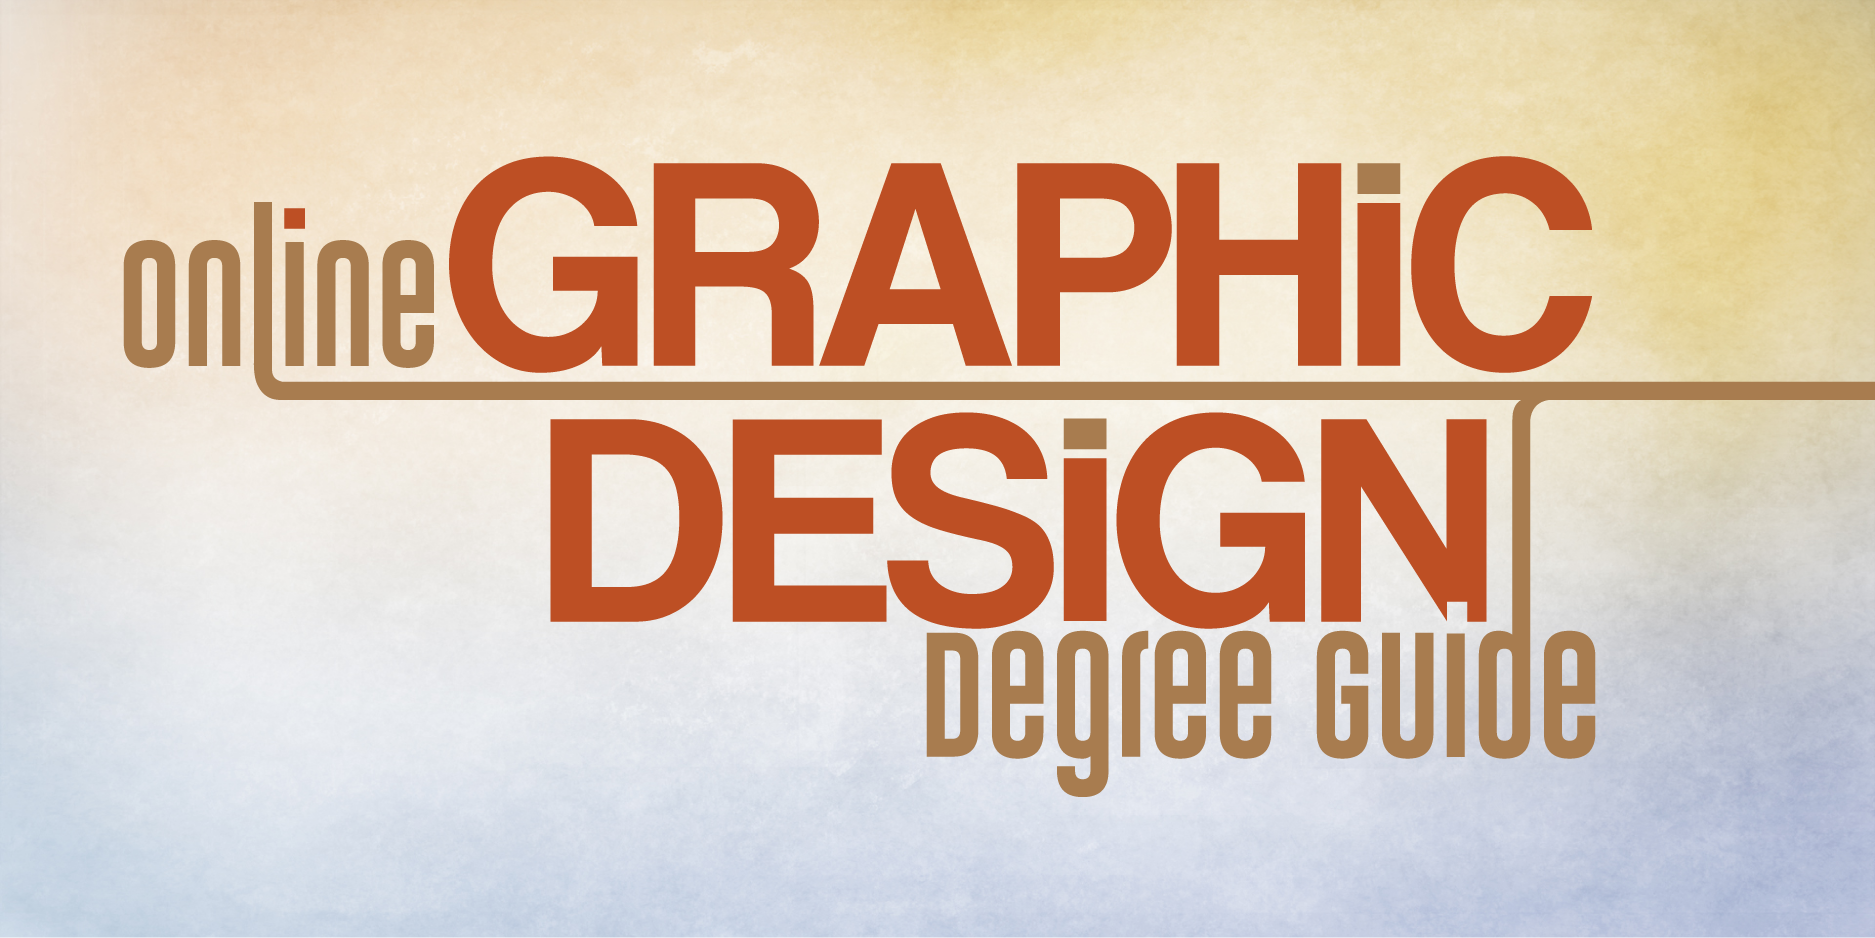 online graphic design phd